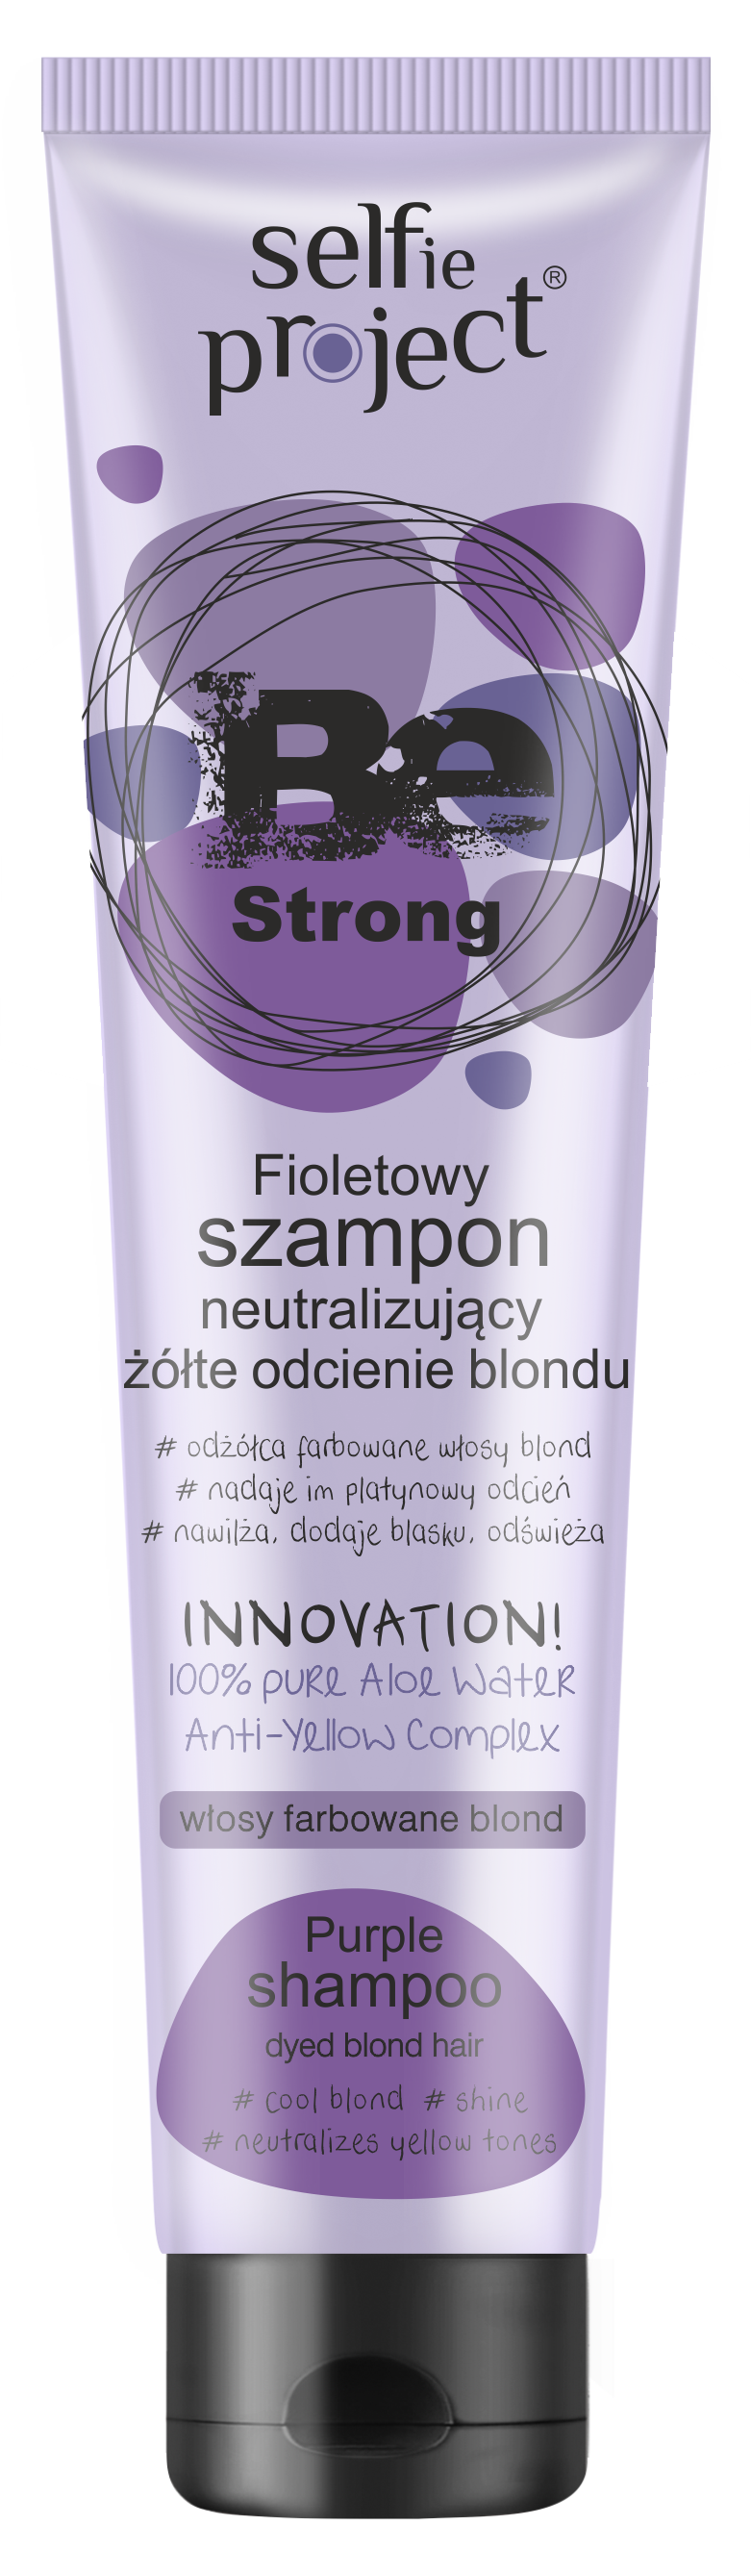 biosilk szampon fioletowy opinie